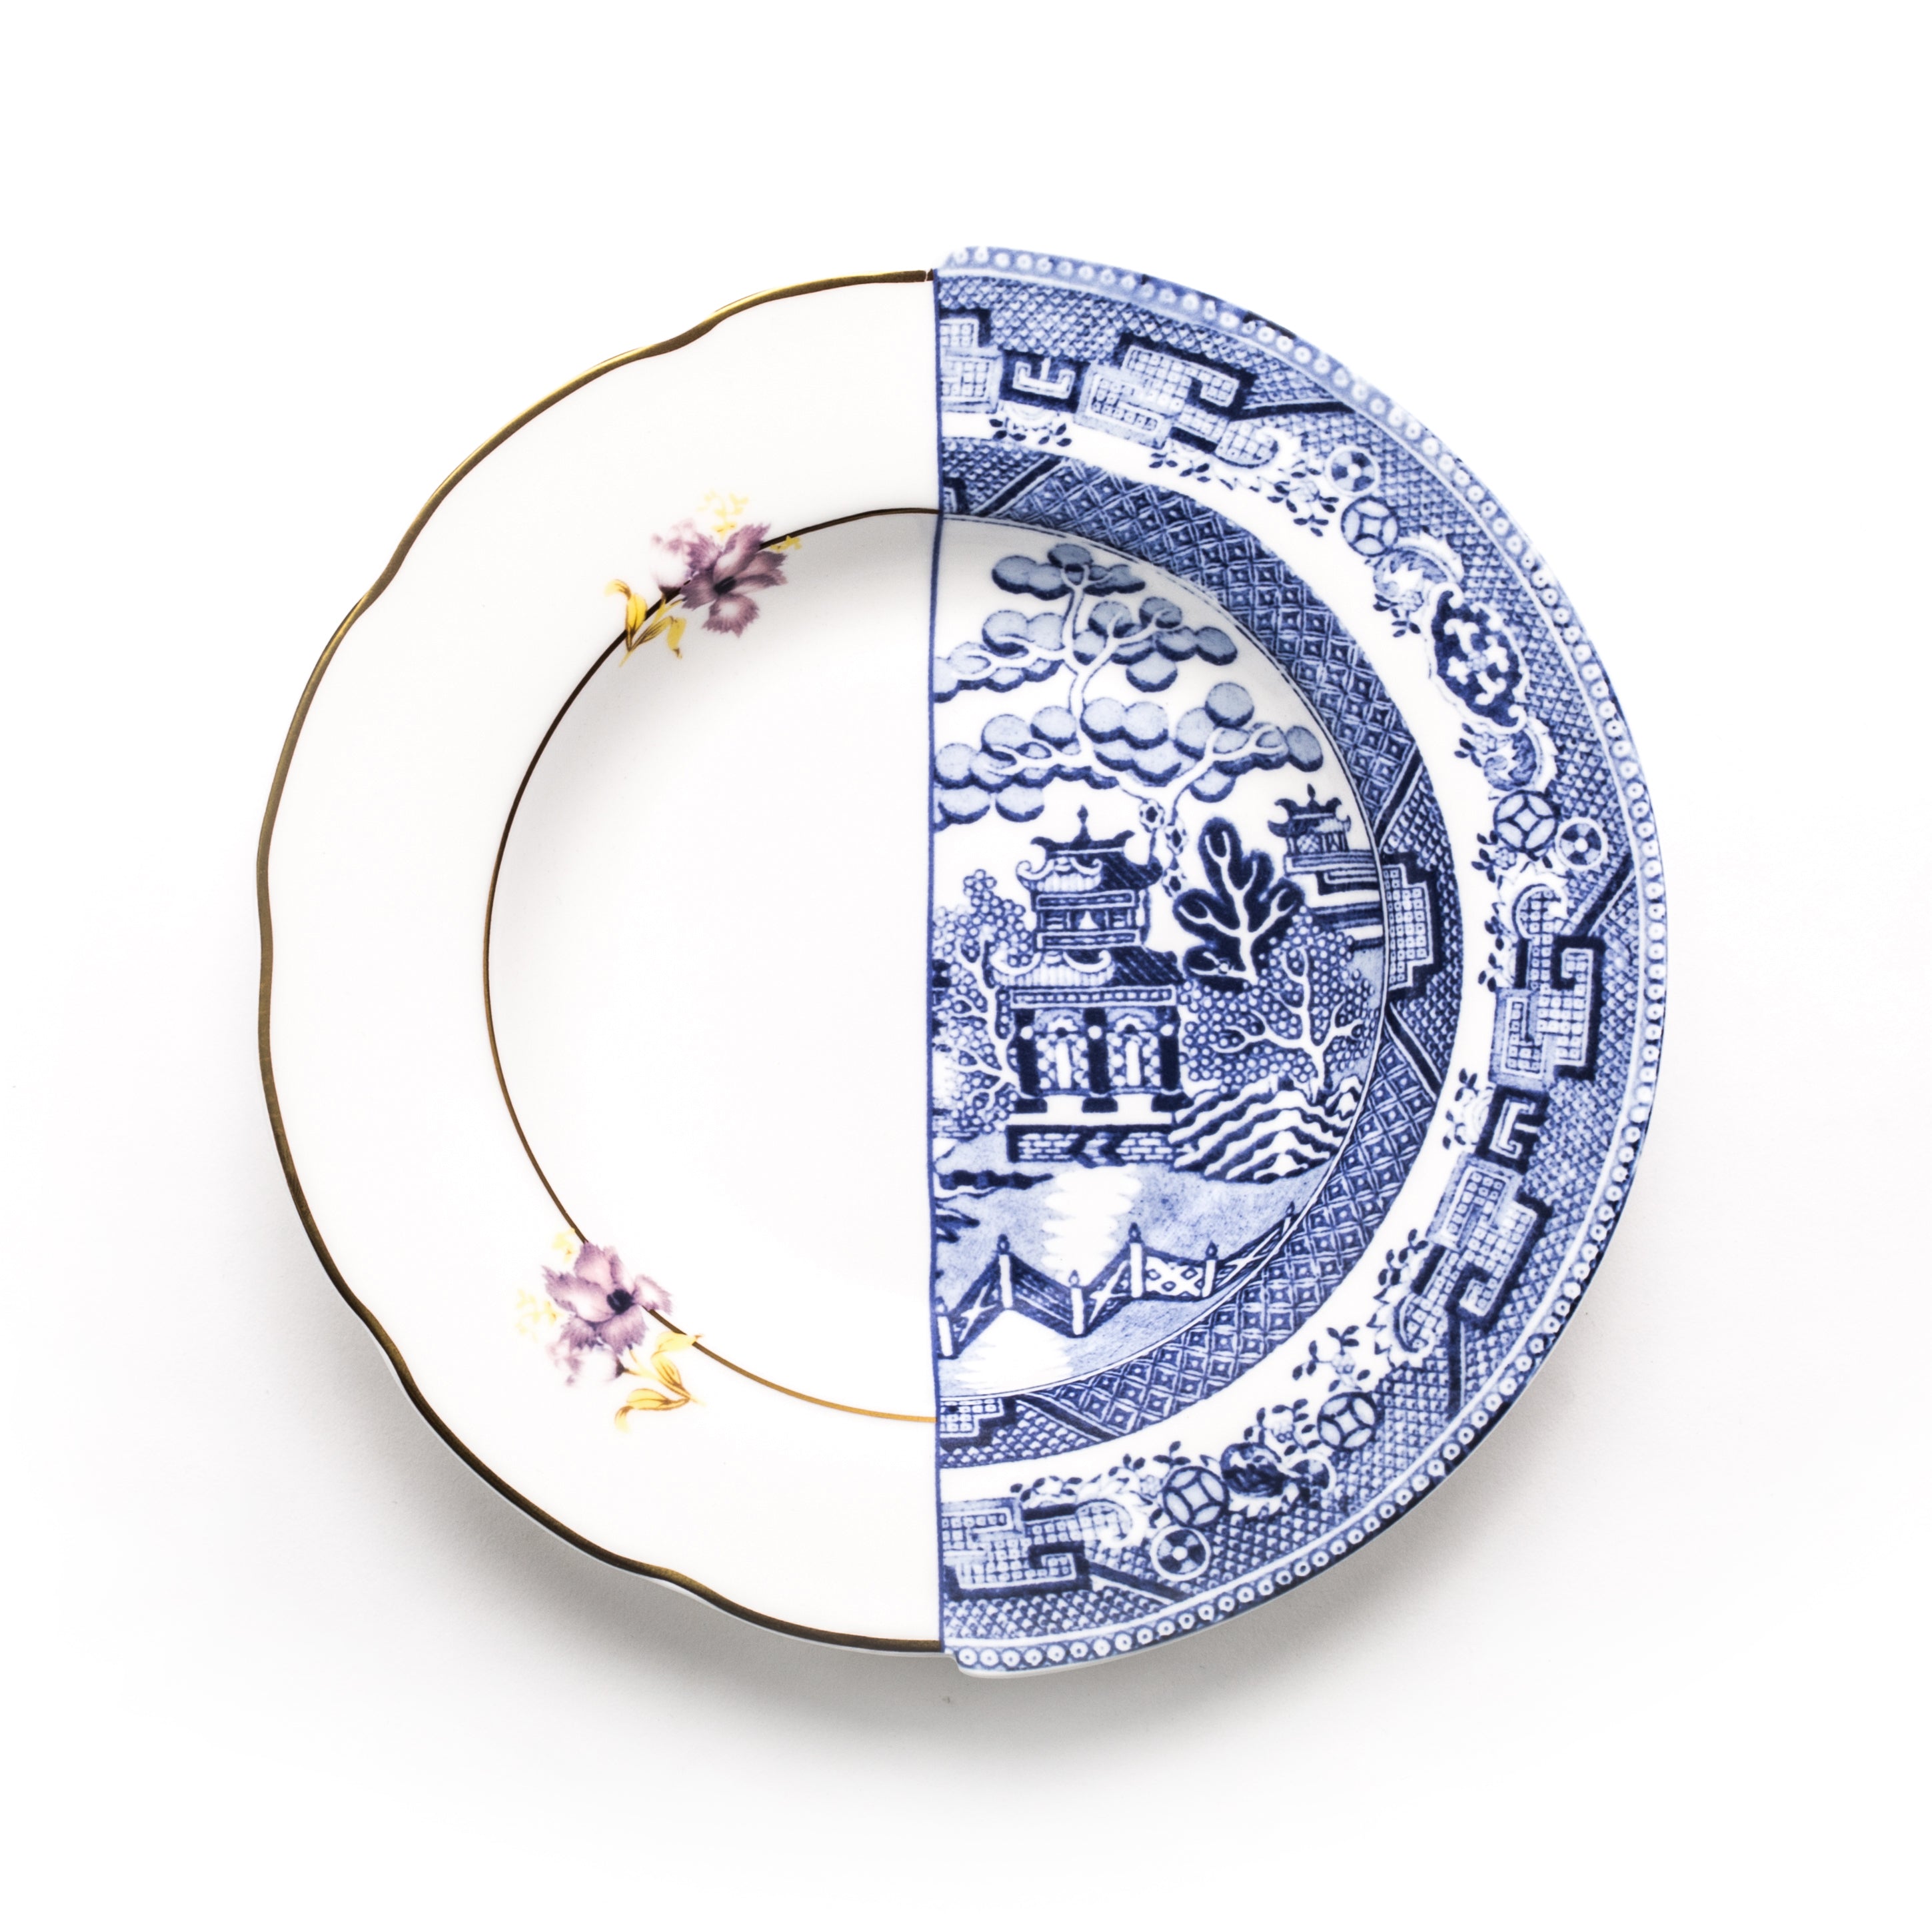 Seletti Hybrid Deep plate in porcelain, diameter 25.4 cm